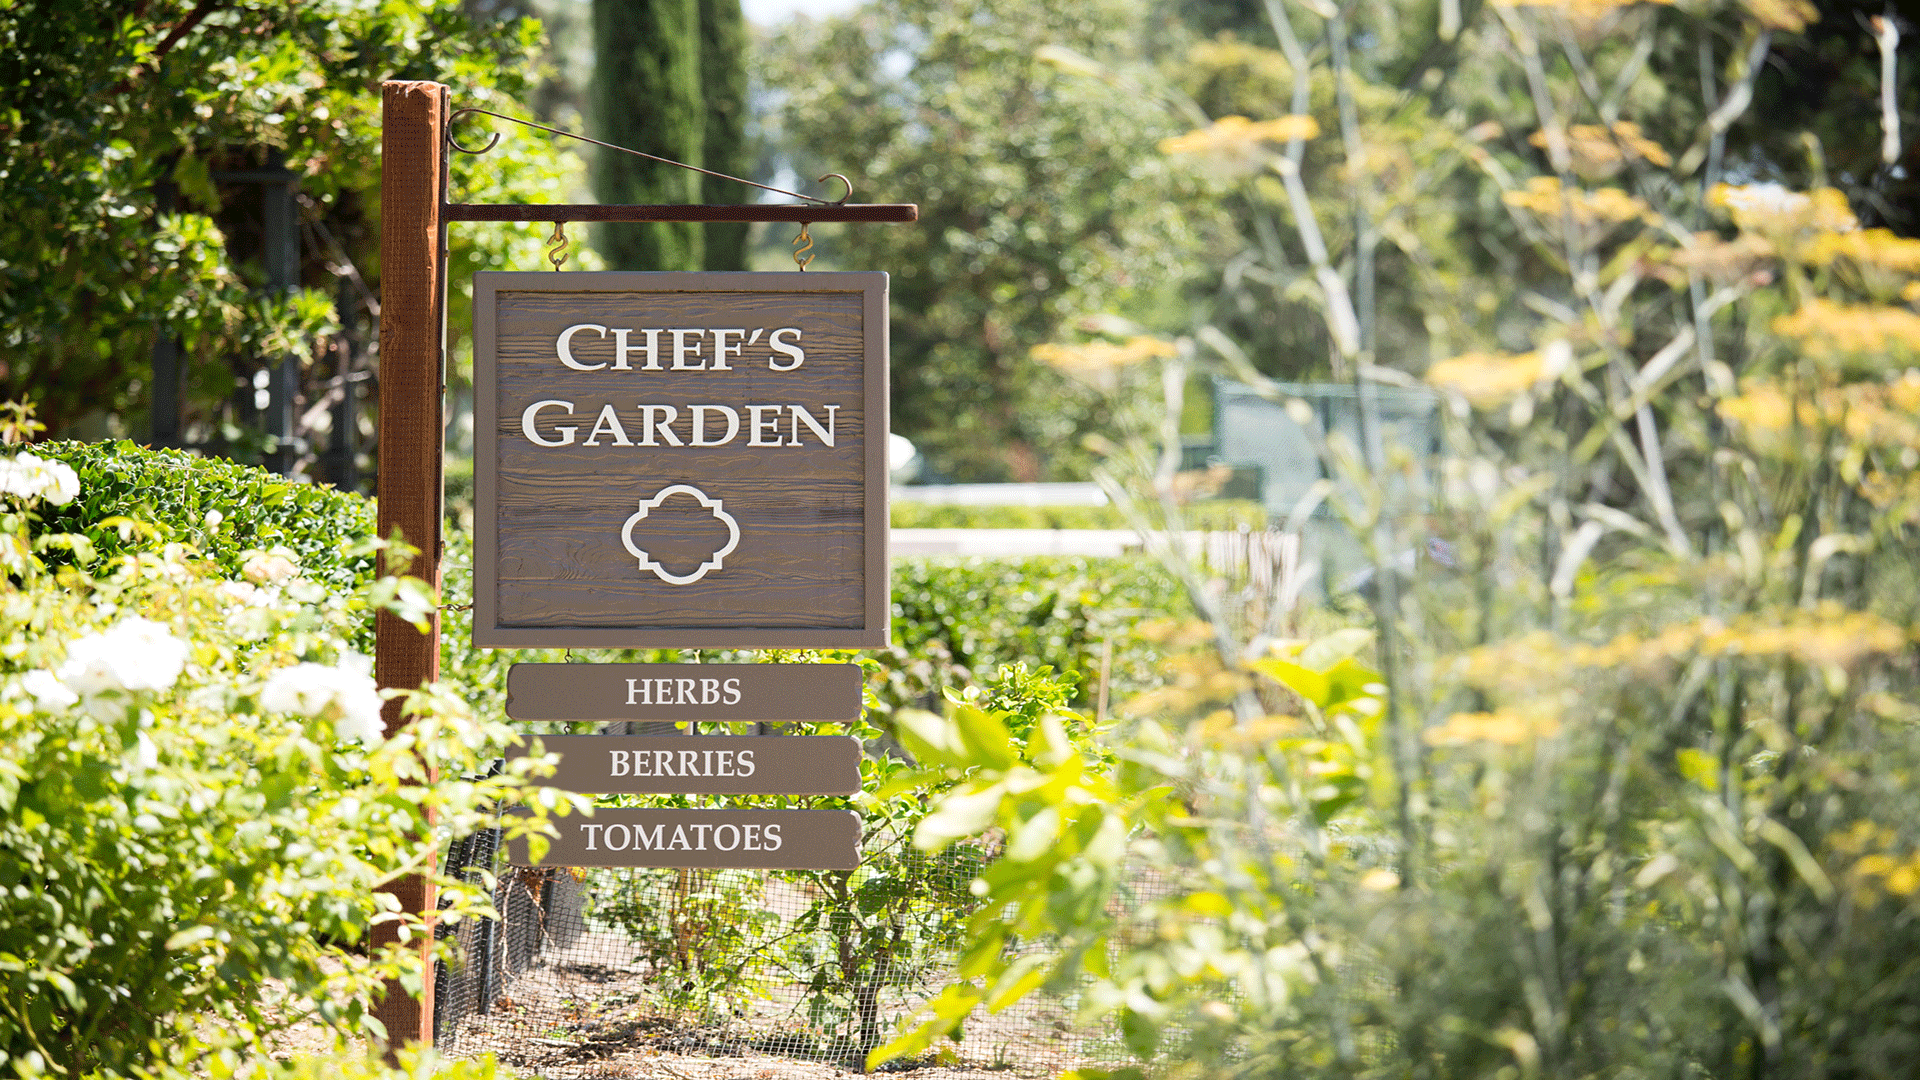 Chefs Garden